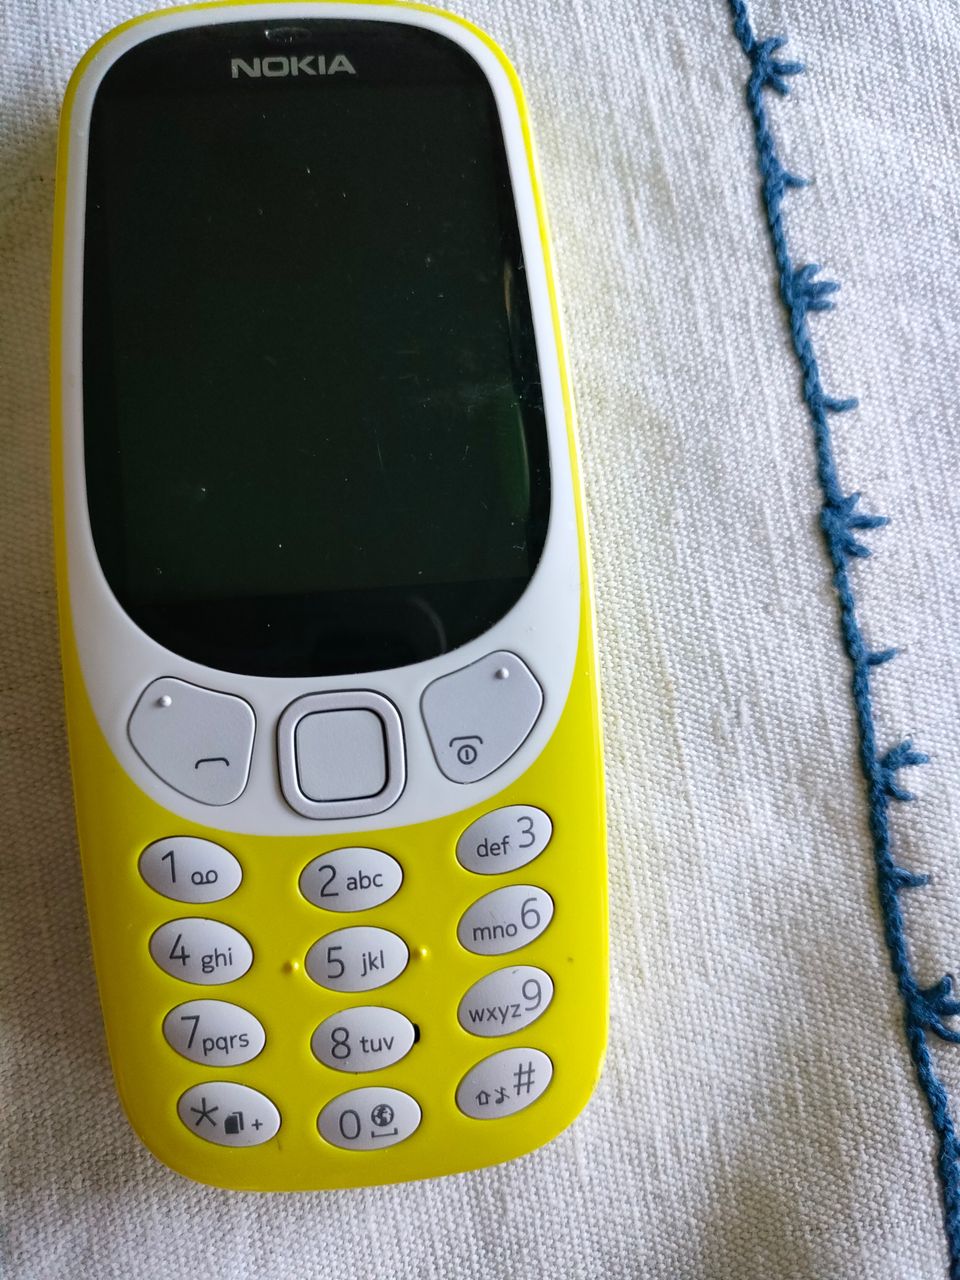 Keltainen Nokia 3310 puhelin